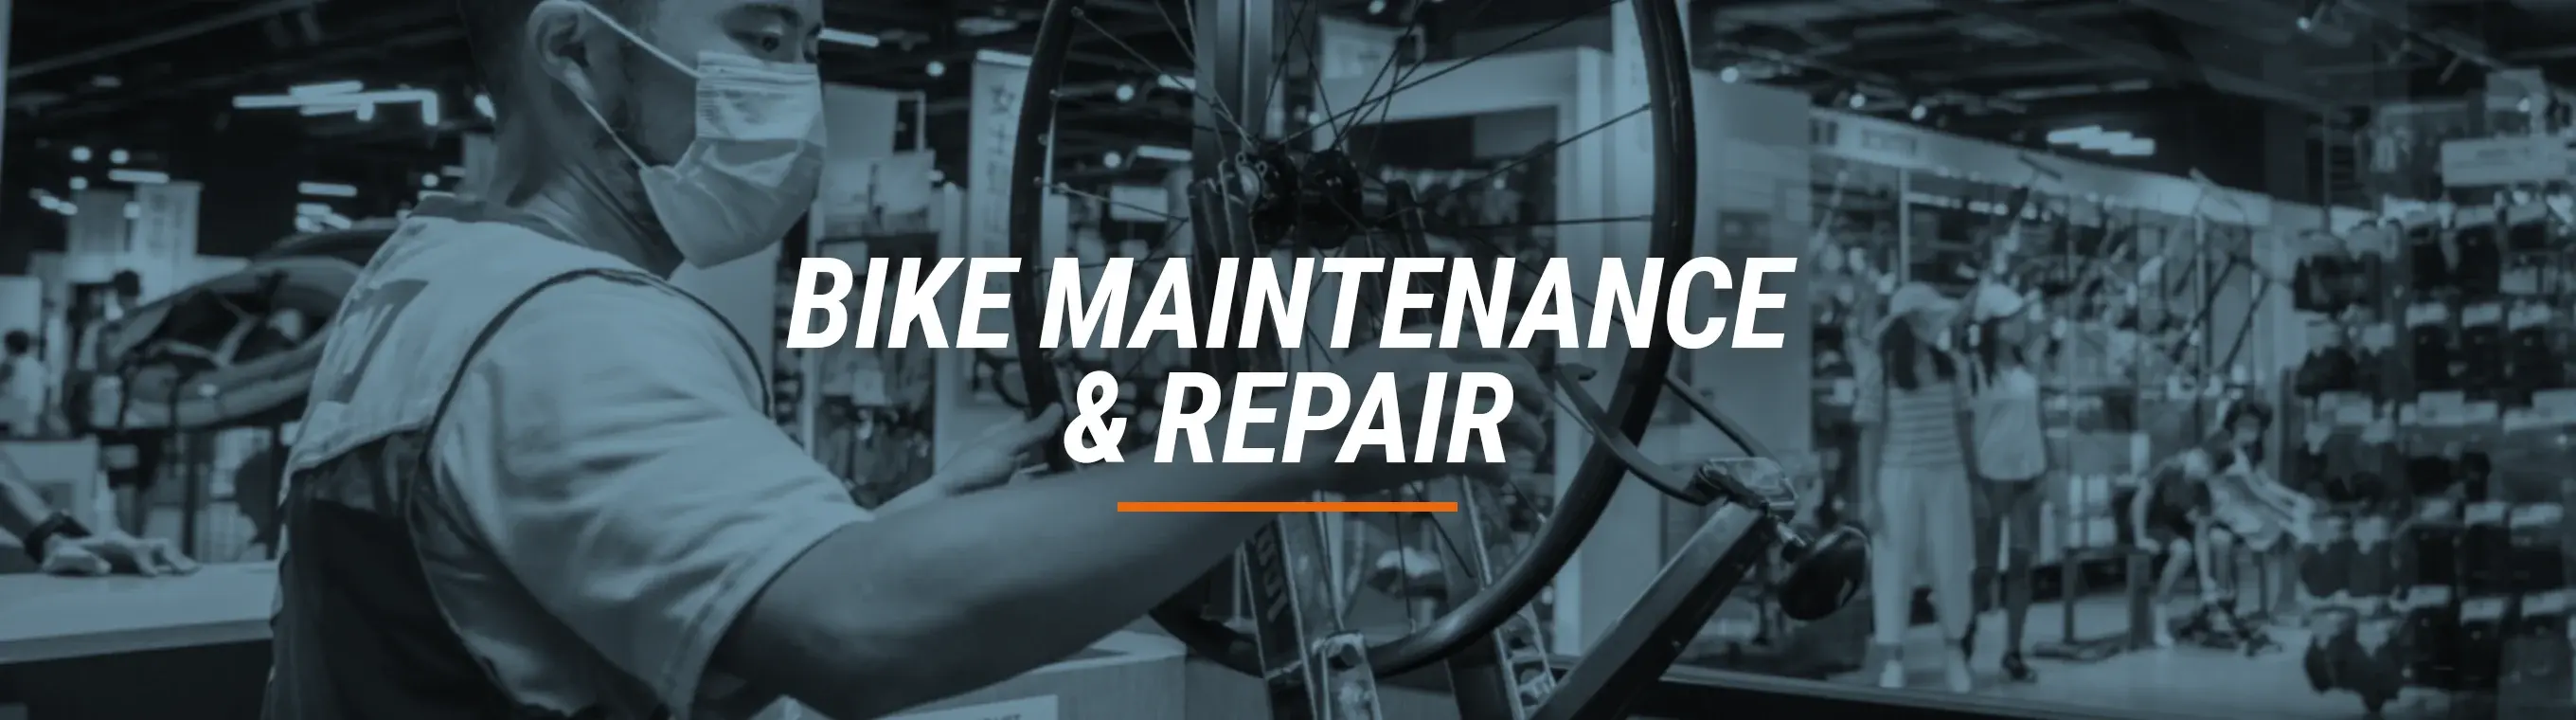 bike-maintenance-repair